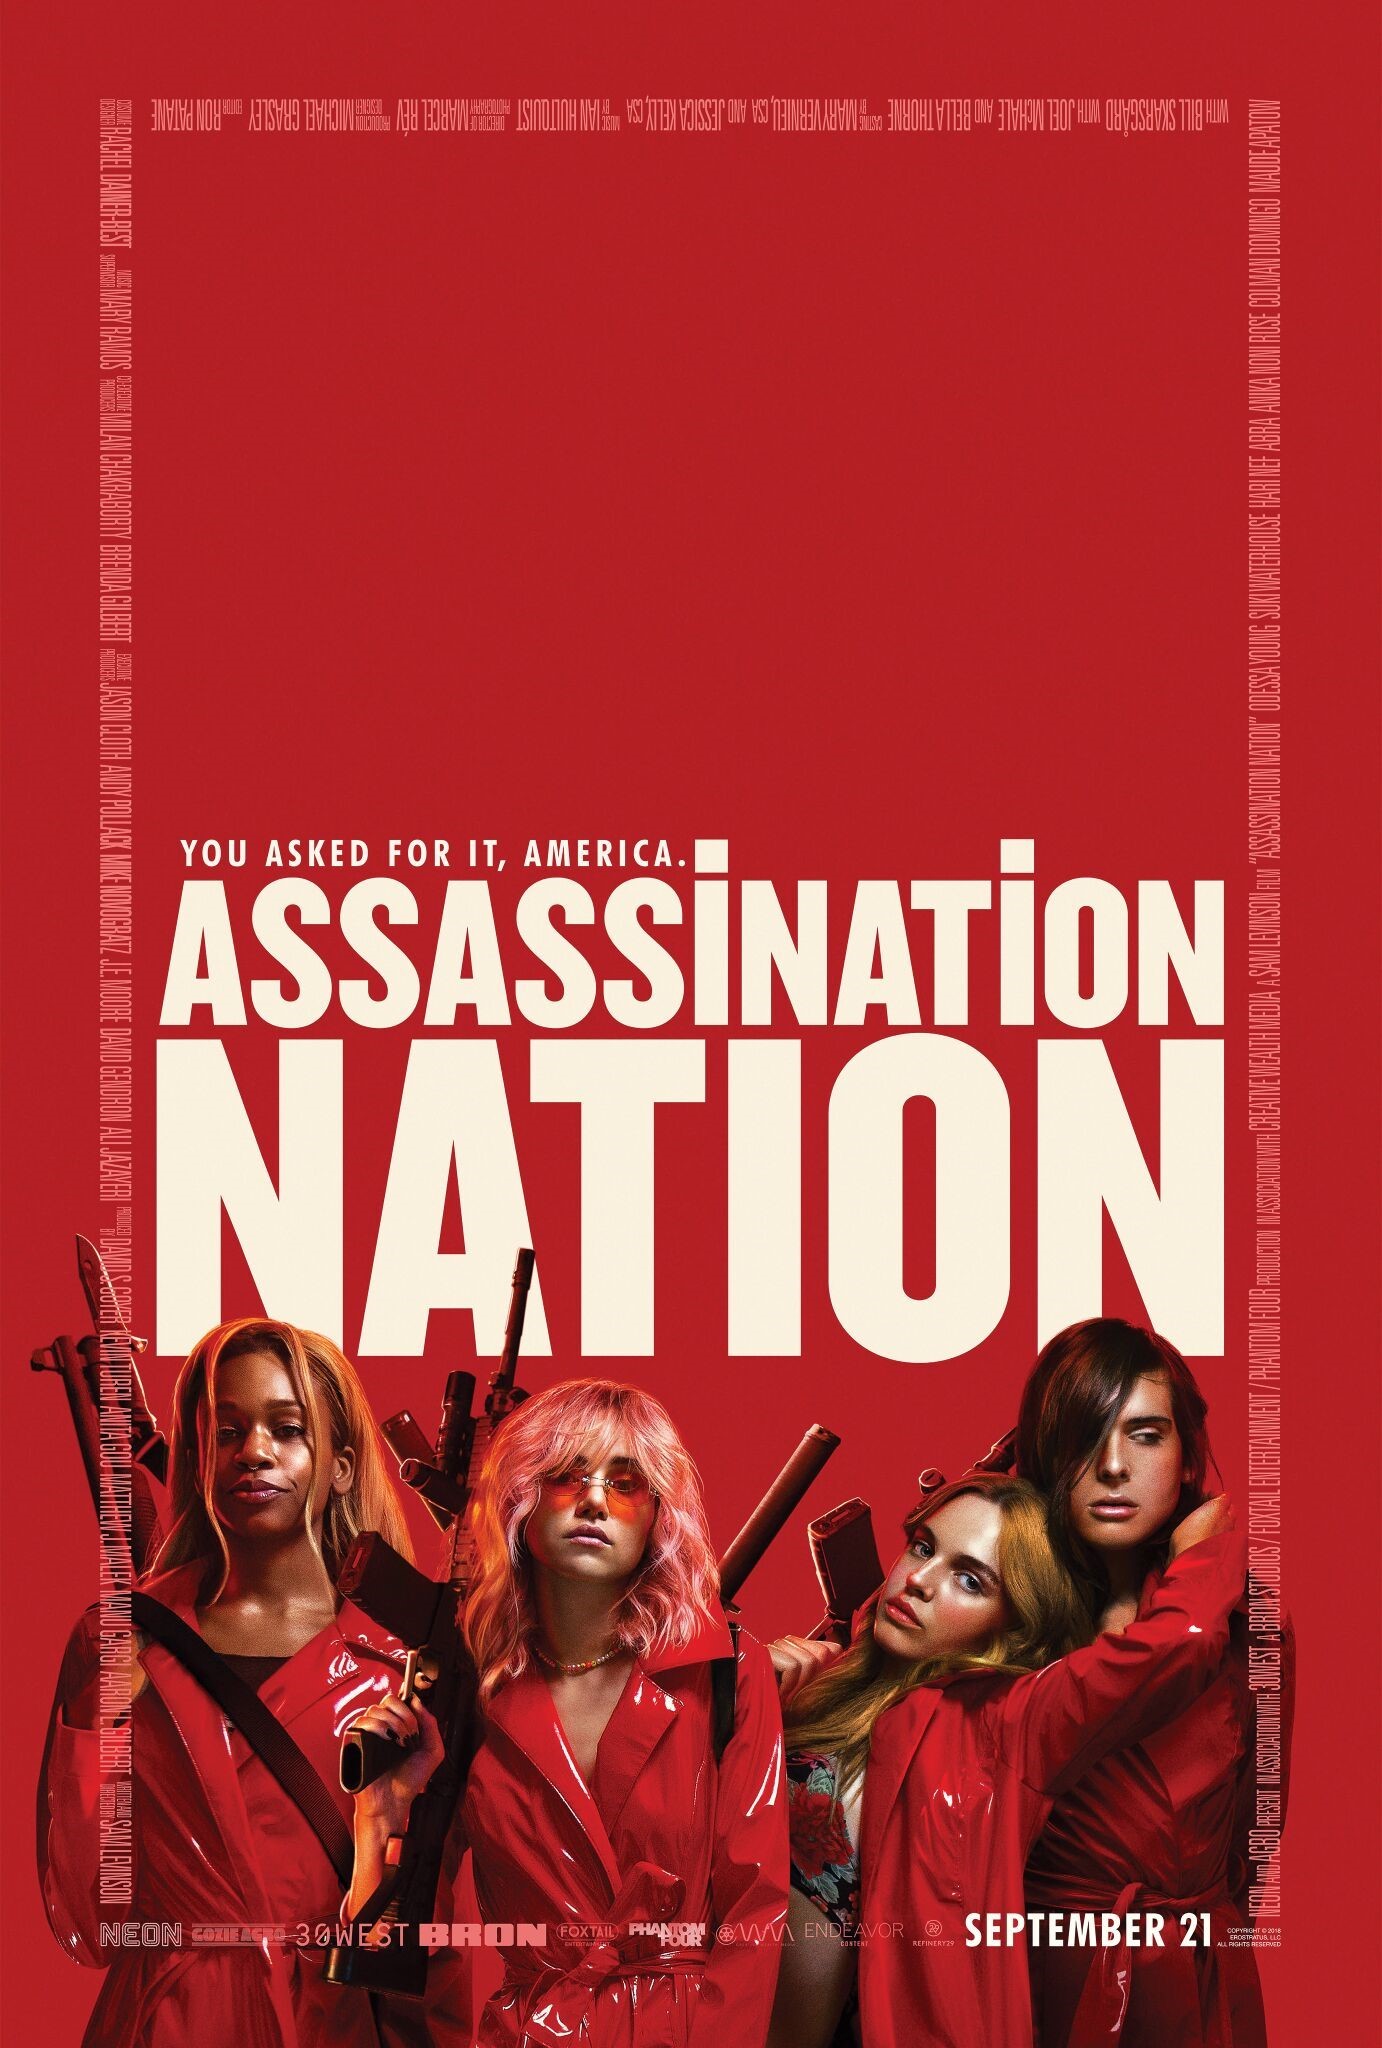 Nonton film Assassination Nation layarkaca21 indoxx1 ganool online streaming terbaru